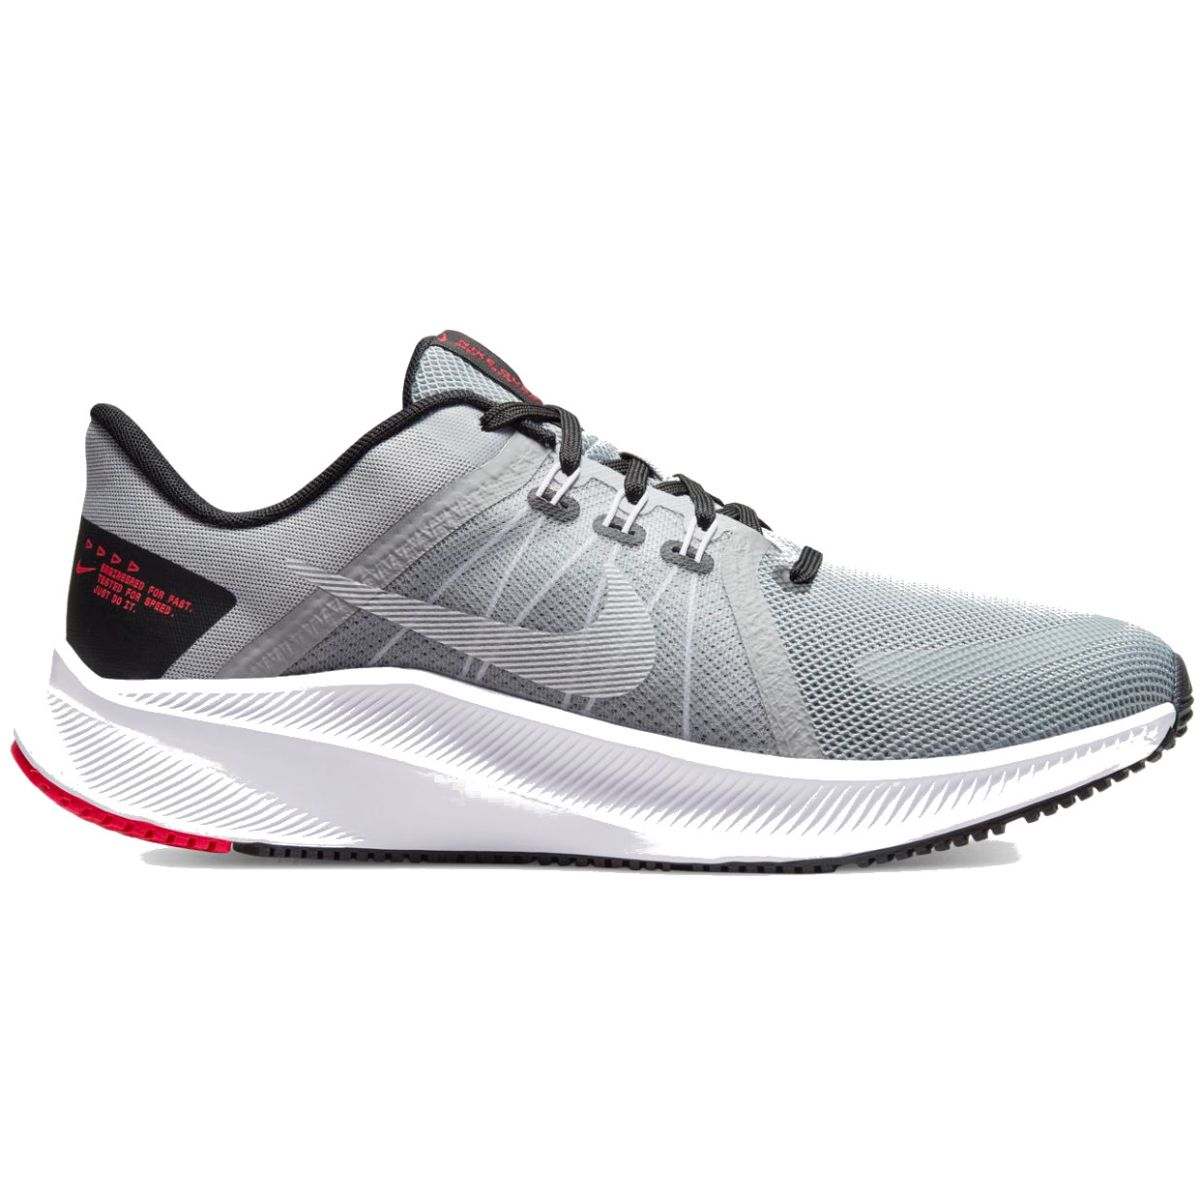 Herstellen kolonie Maaltijd Nike Quest 4 Men's Road Running Shoes DA1105-007